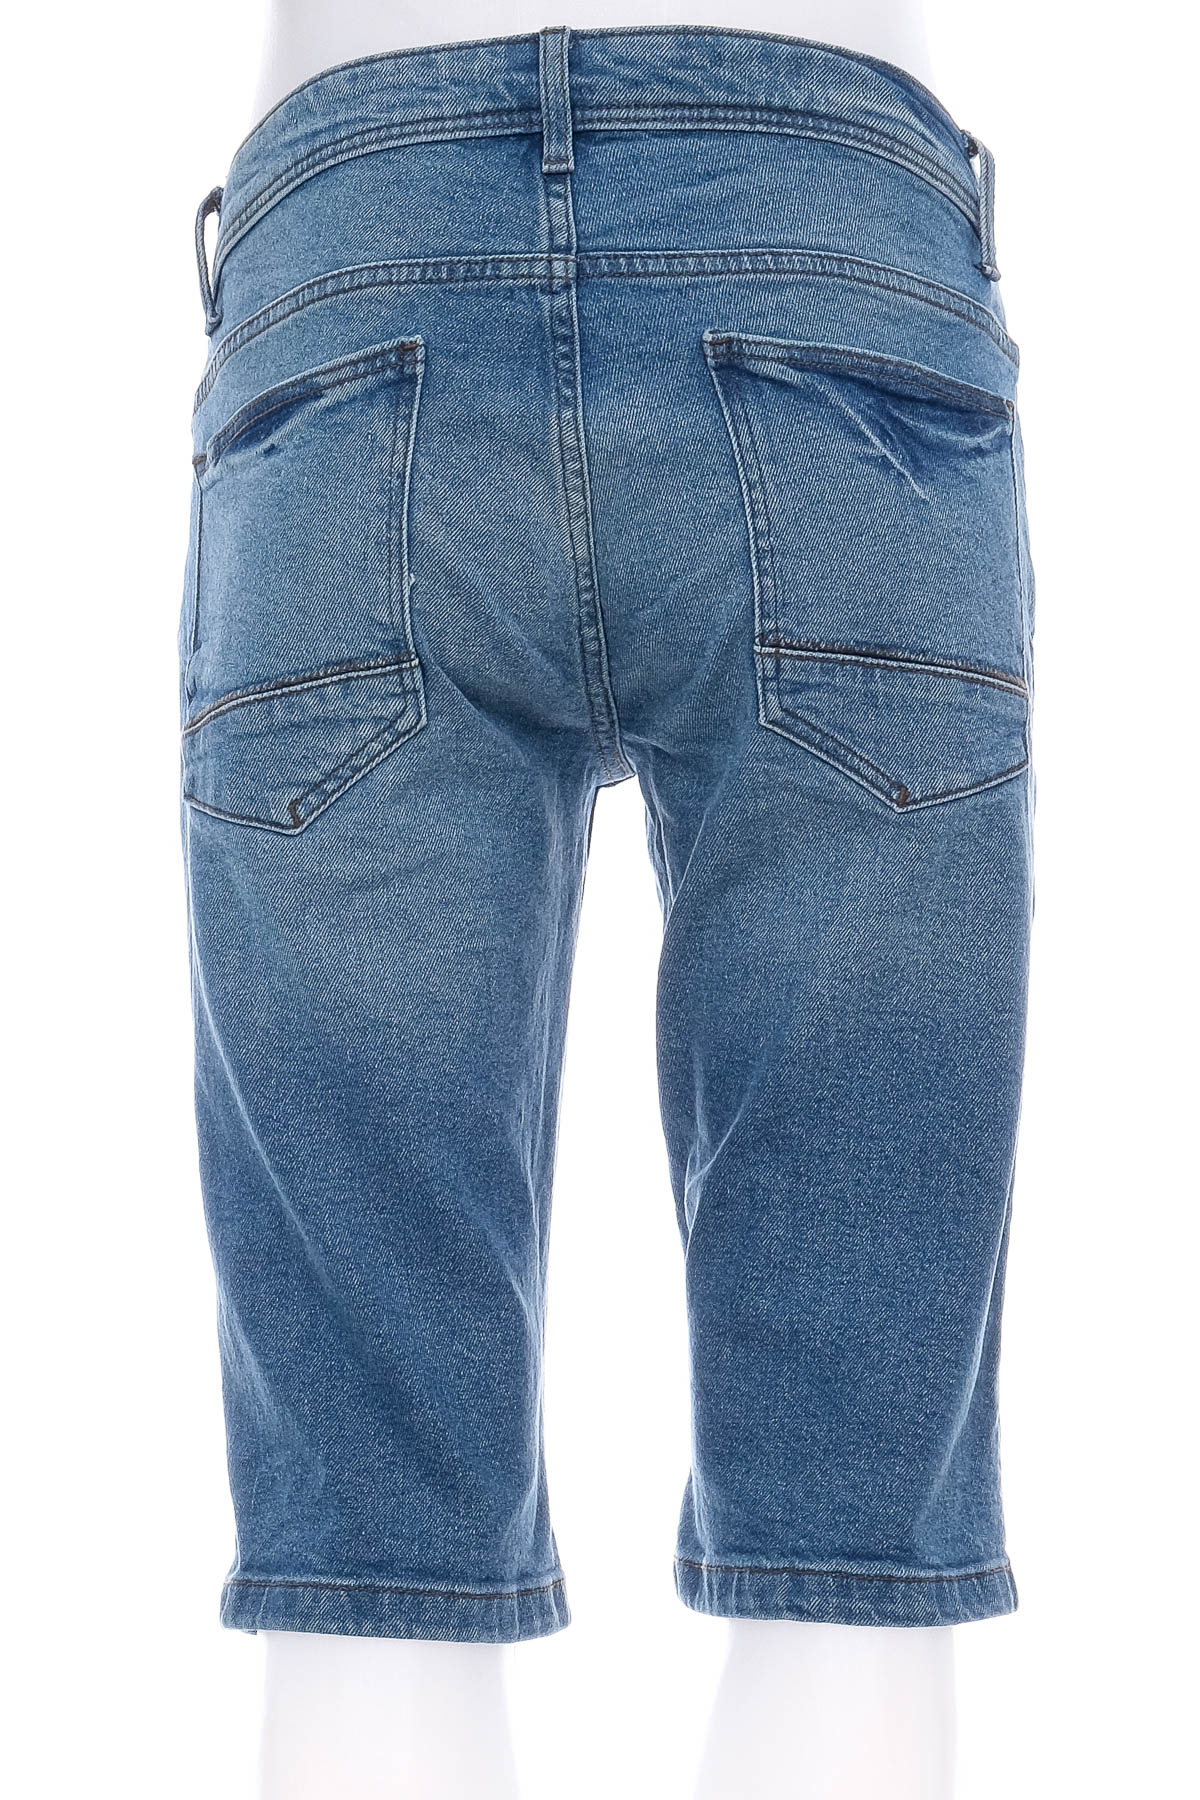 Pantaloni scurți bărbați - TeX - 1